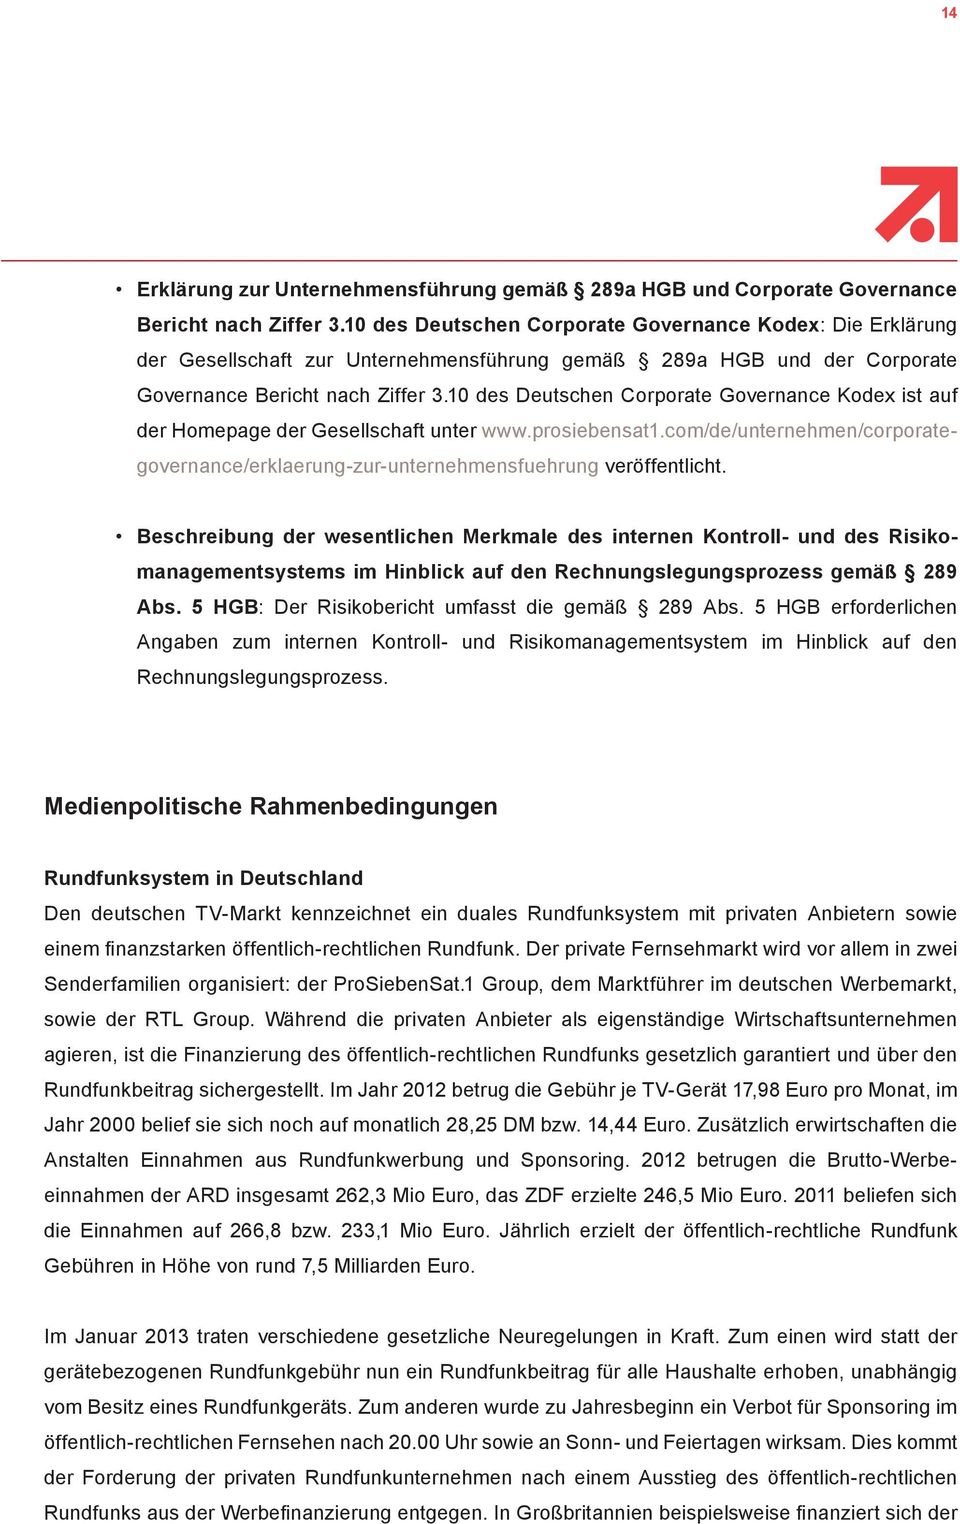 10 des Deutschen Corporate Governance Kodex ist auf der Homepage der Gesellschaft unter www.prosiebensat1.com/de/unternehmen/corporategovernance/erklaerung-zur-unternehmensfuehrung veröffentlicht.